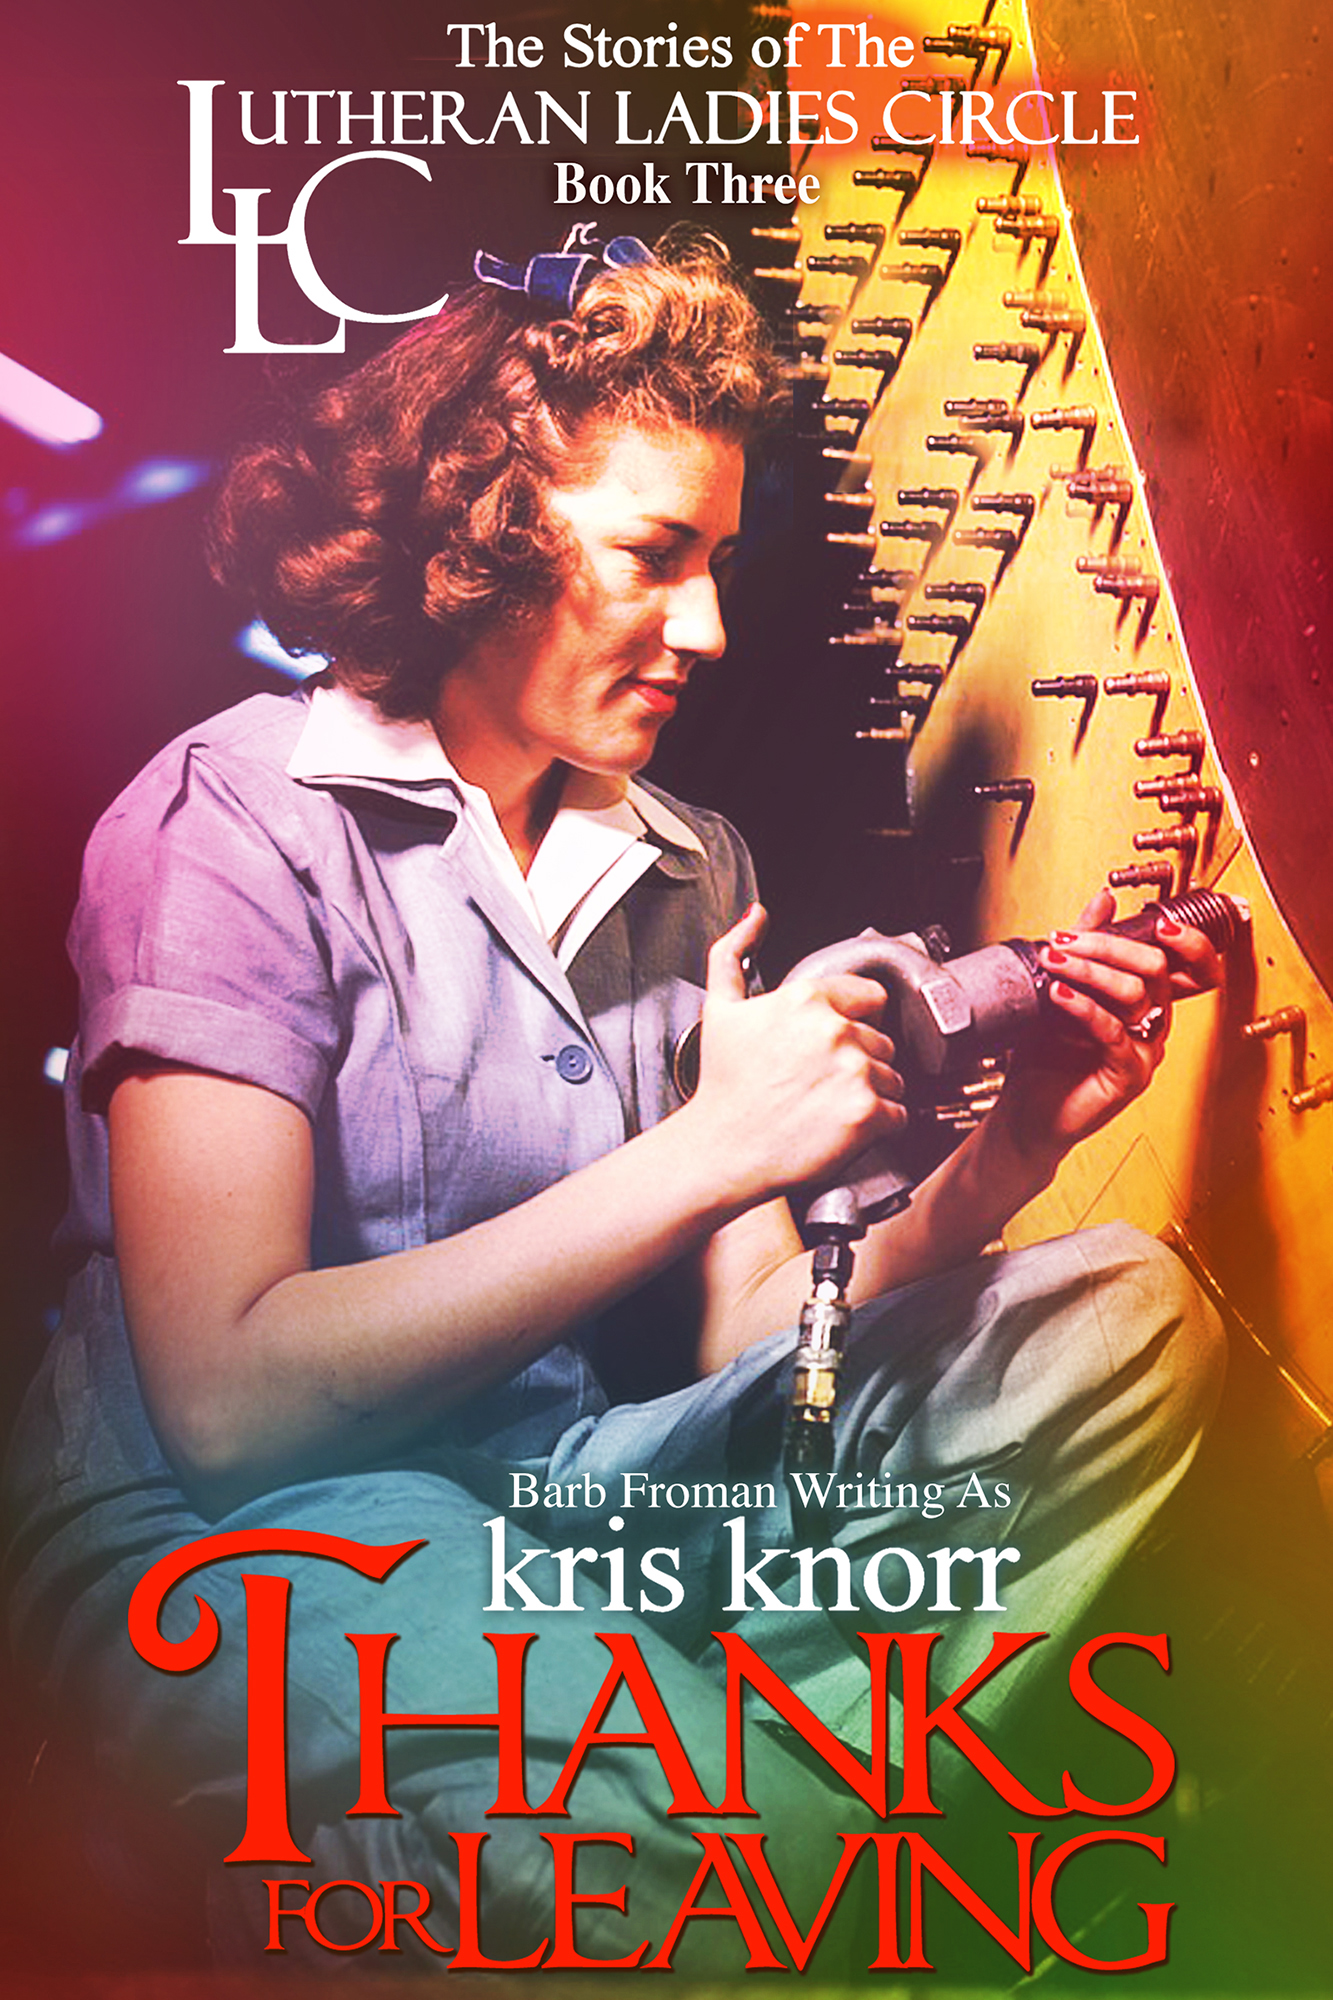 BK Froman writing as Kris Knorr